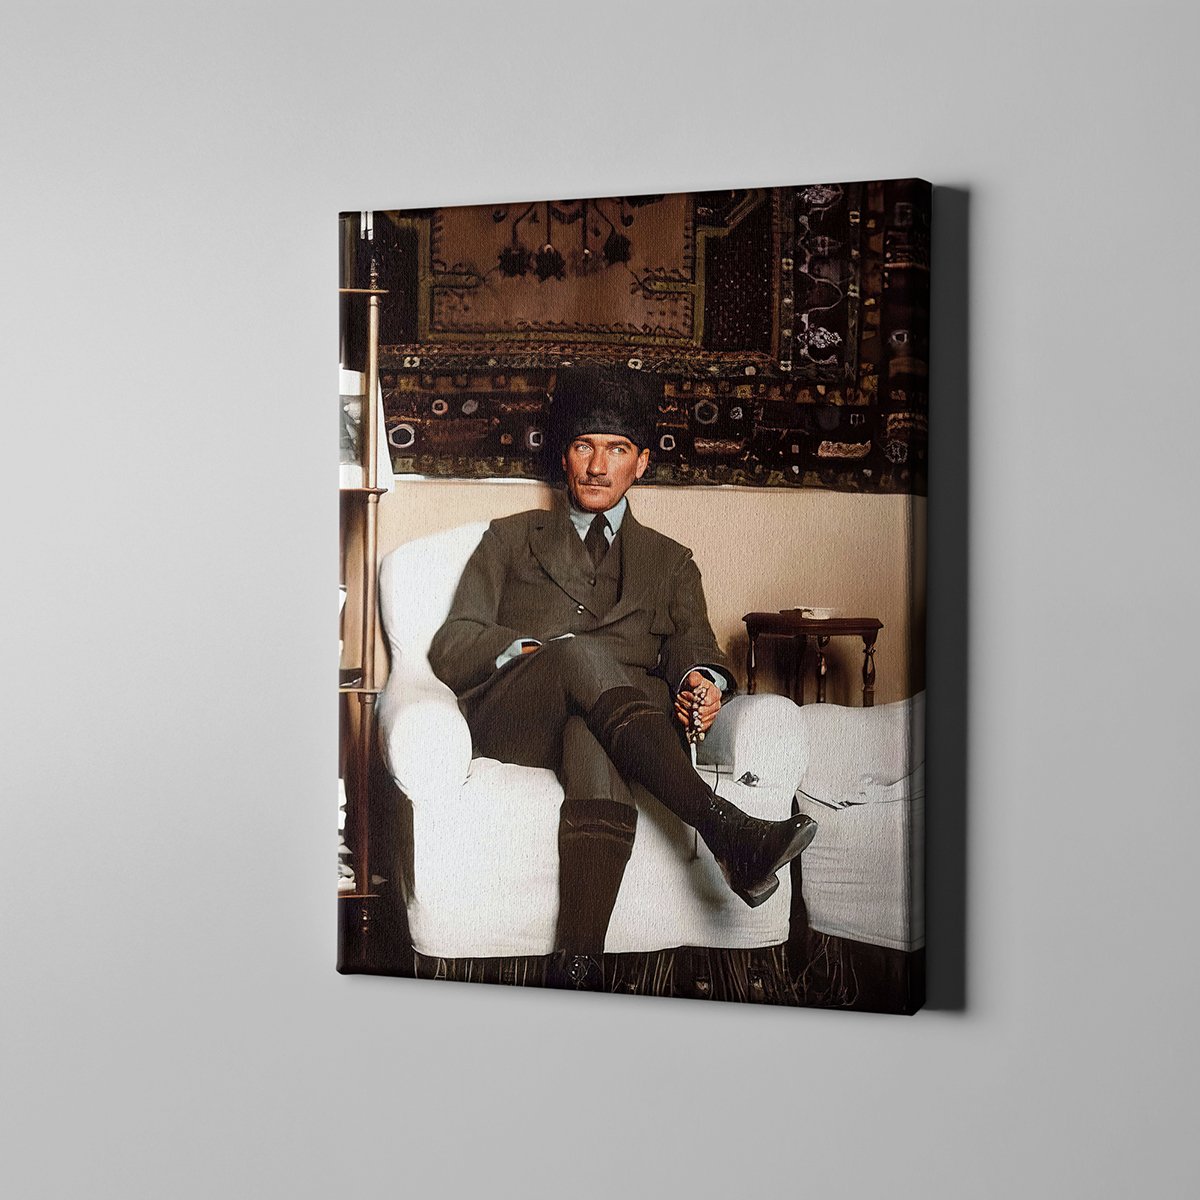 Canvas701 | Yüksek Çözünürlüklü Asker Atatürk Ziyarette Kanvas Tablo - 